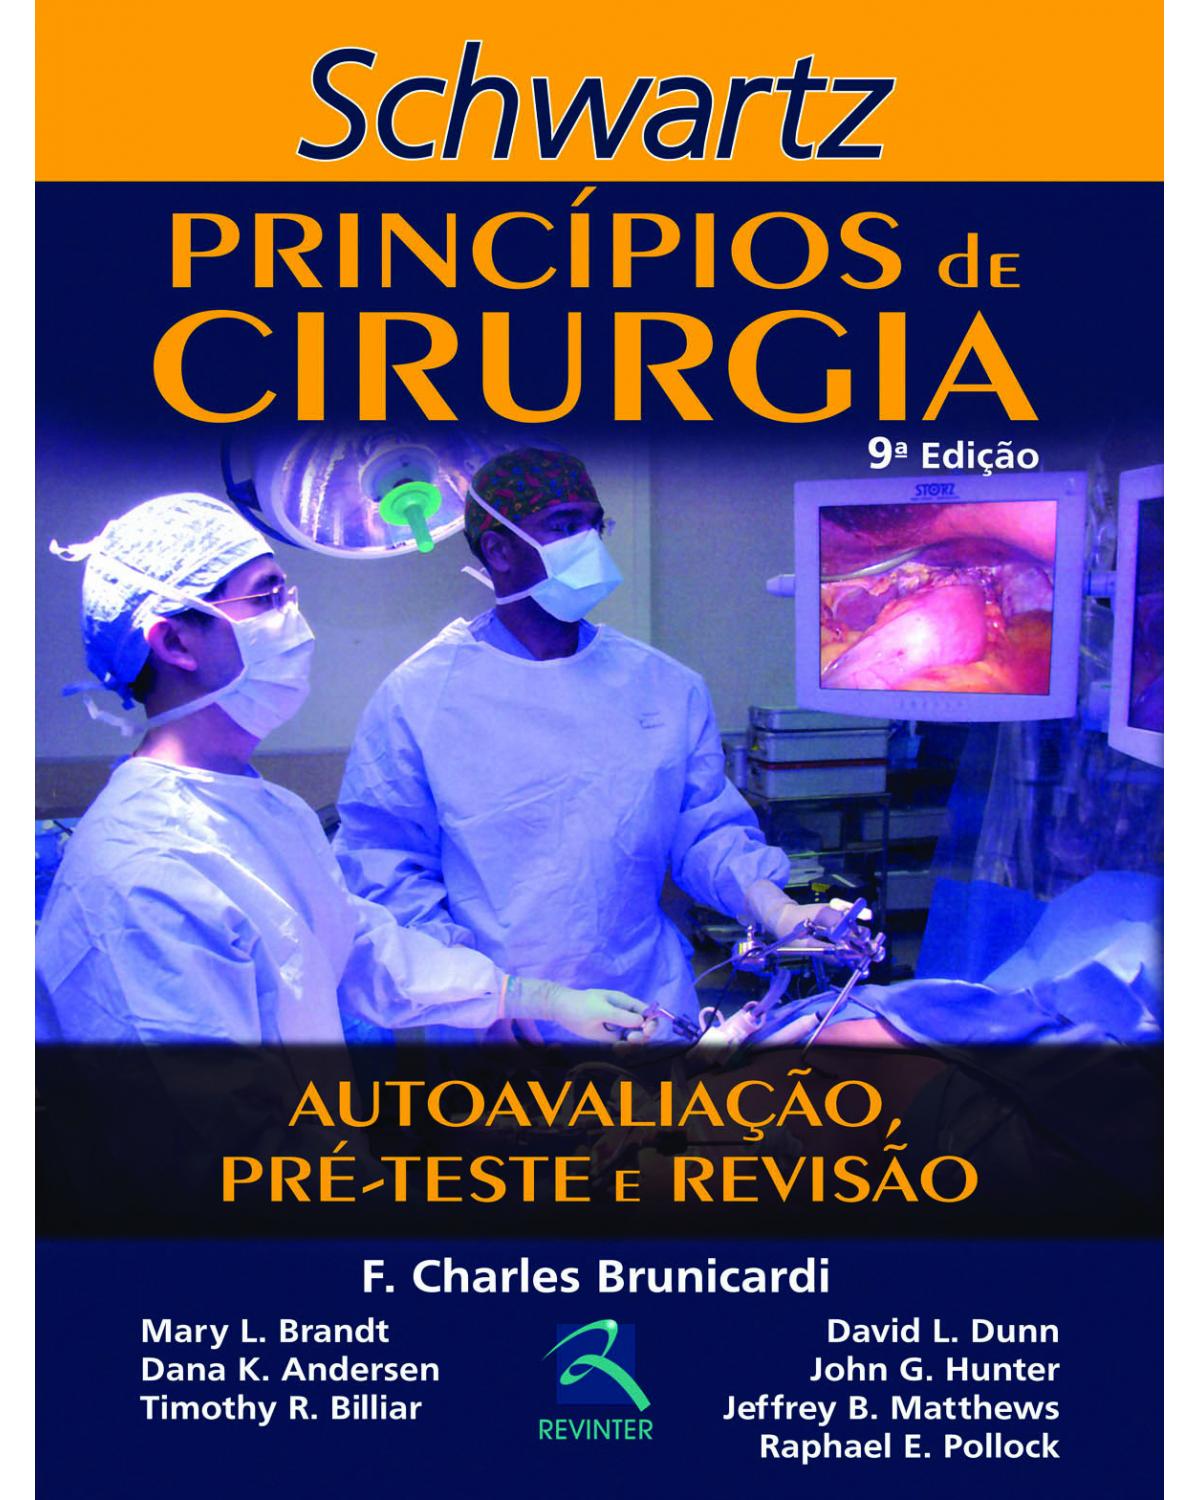 Schwartz - Princípios de cirurgia - autoavaliação, pré-teste e revisão - 9ª Edição | 2013